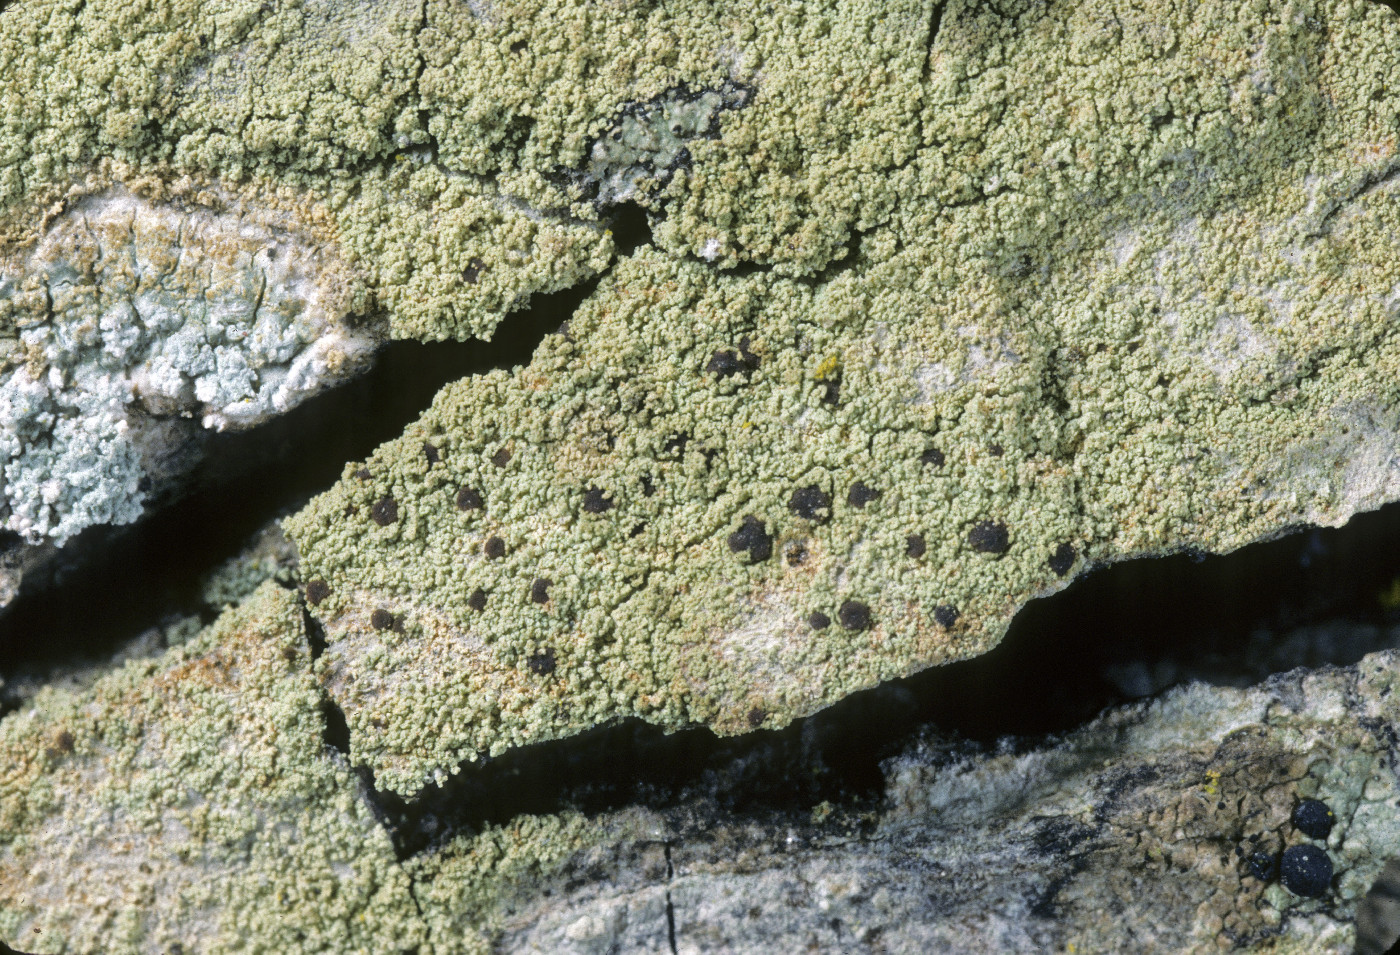 Pyrrhospora quernea image